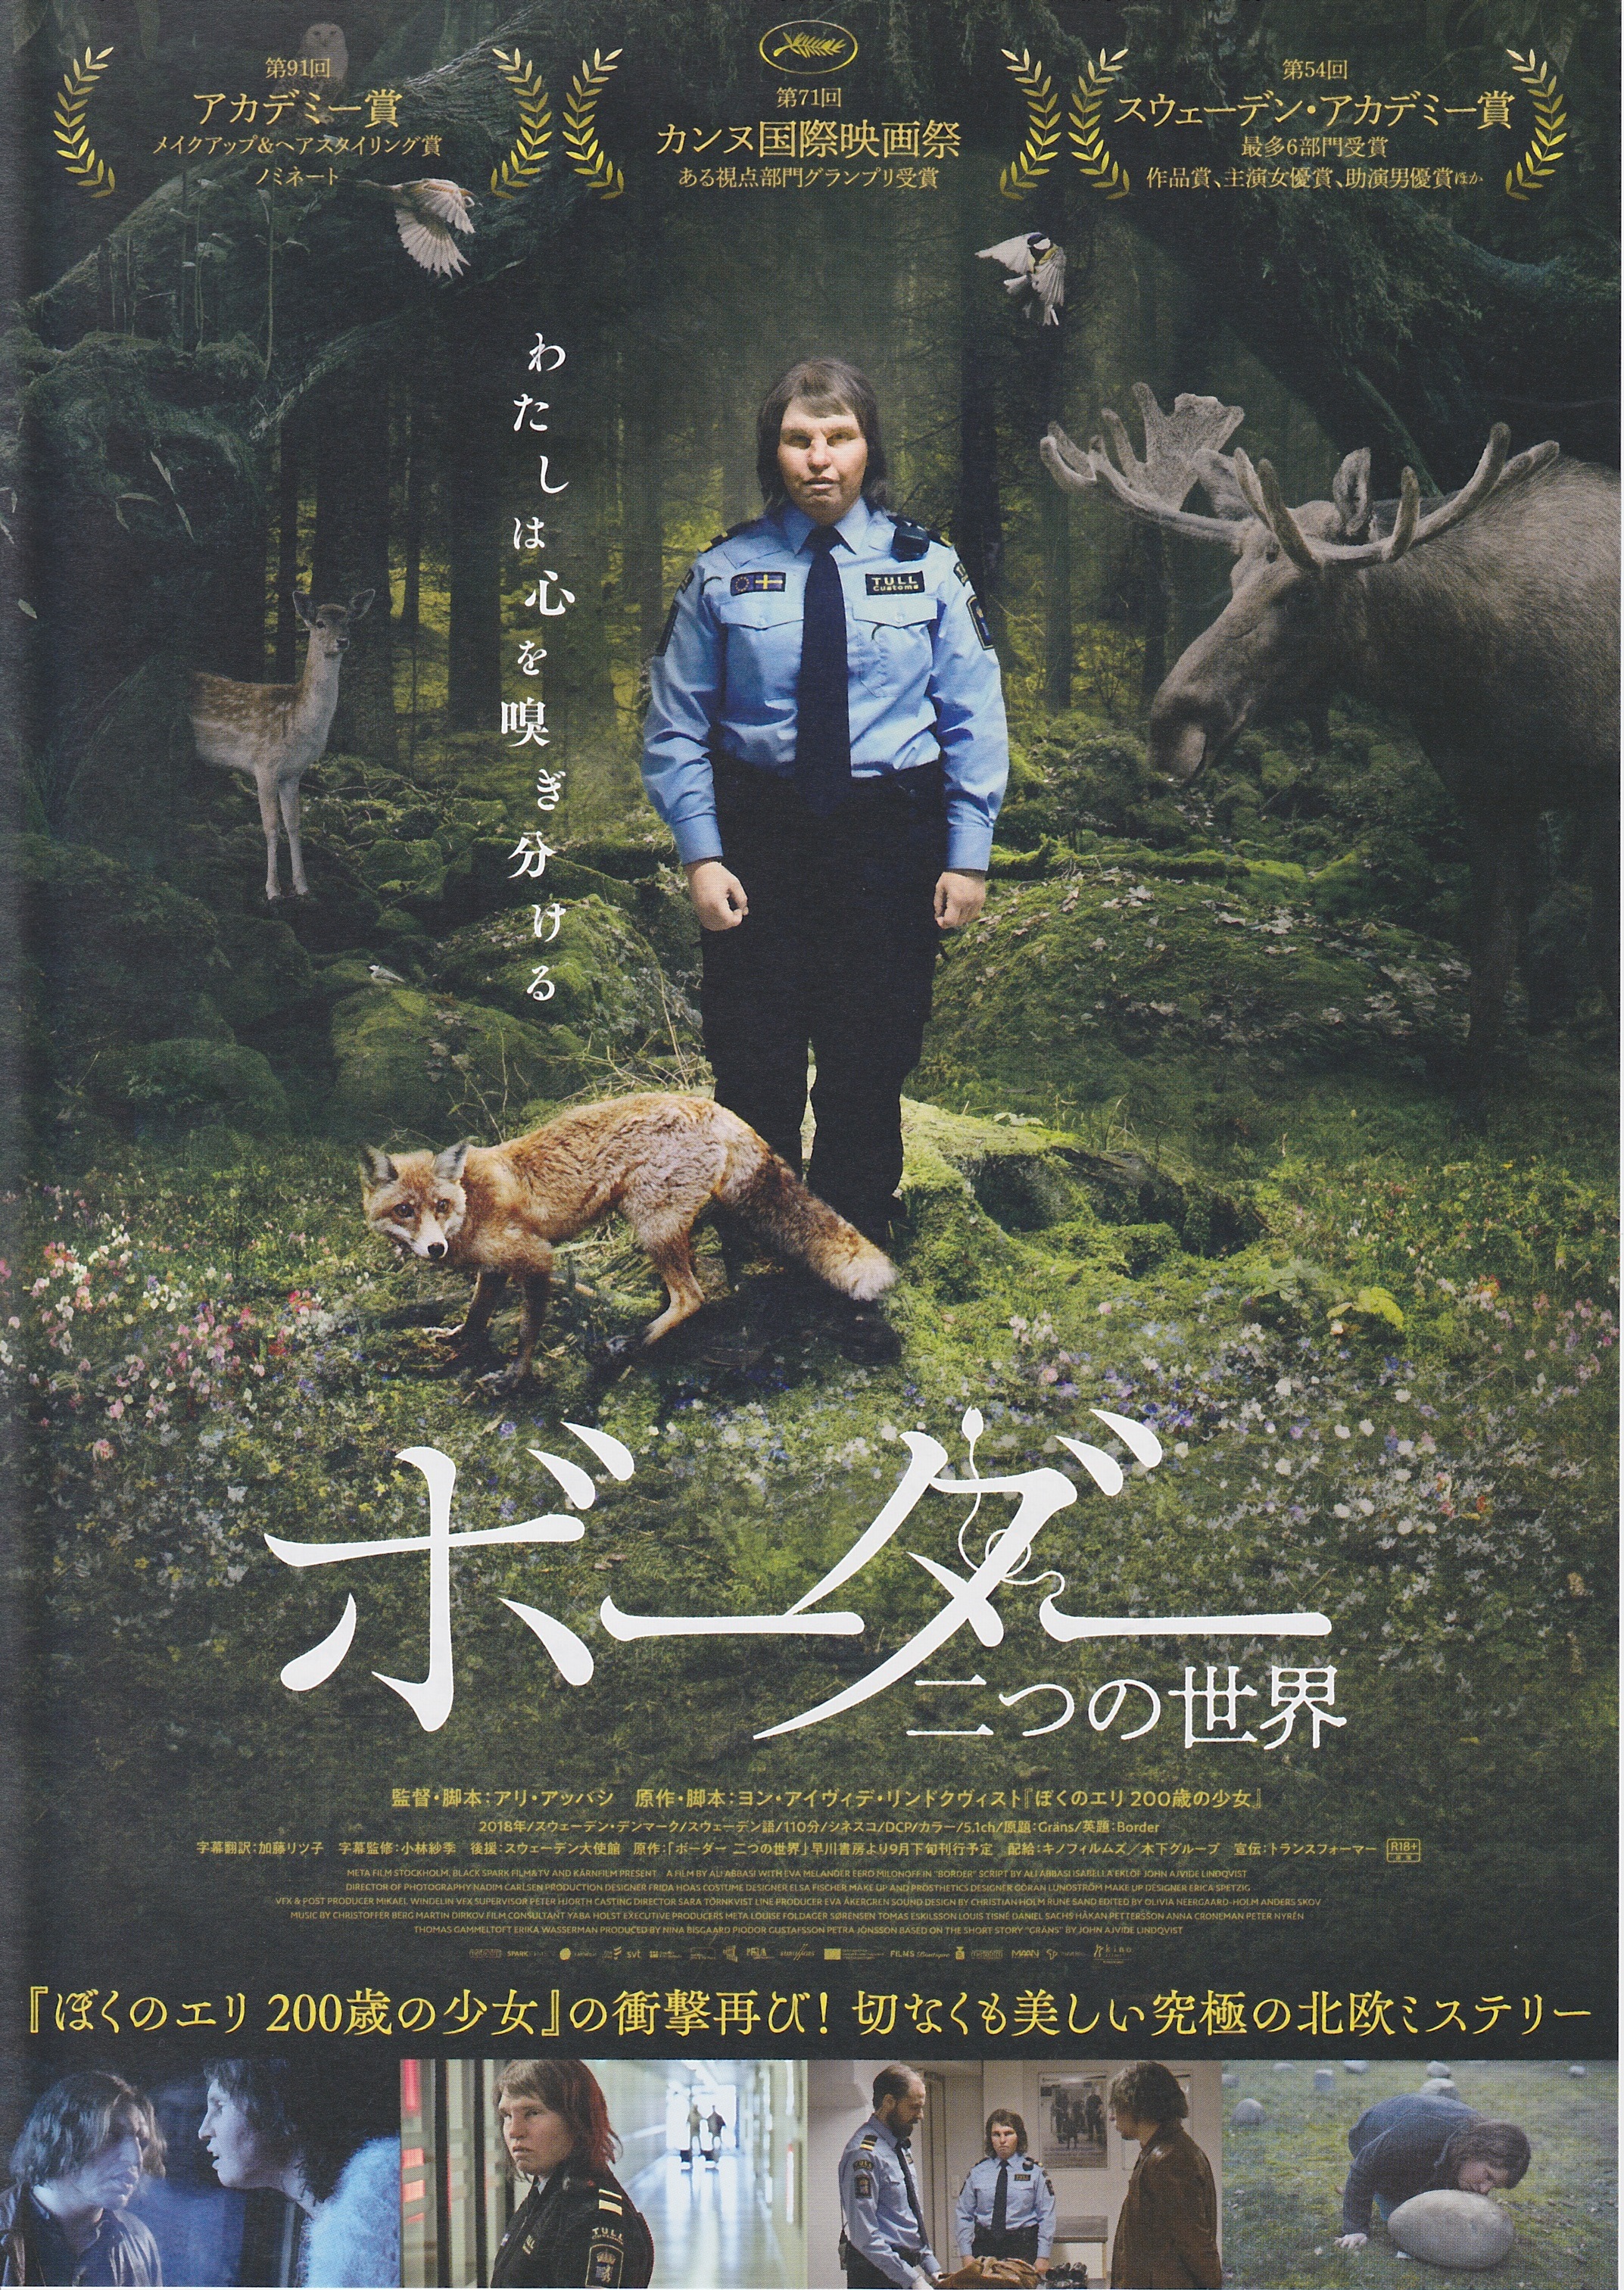 神戸初心者ブログ 神戸てくてく デコversion 今週の映画 グロい動物の野生に隠された悲しくグロいお伽話 ボーダー 二つの世界